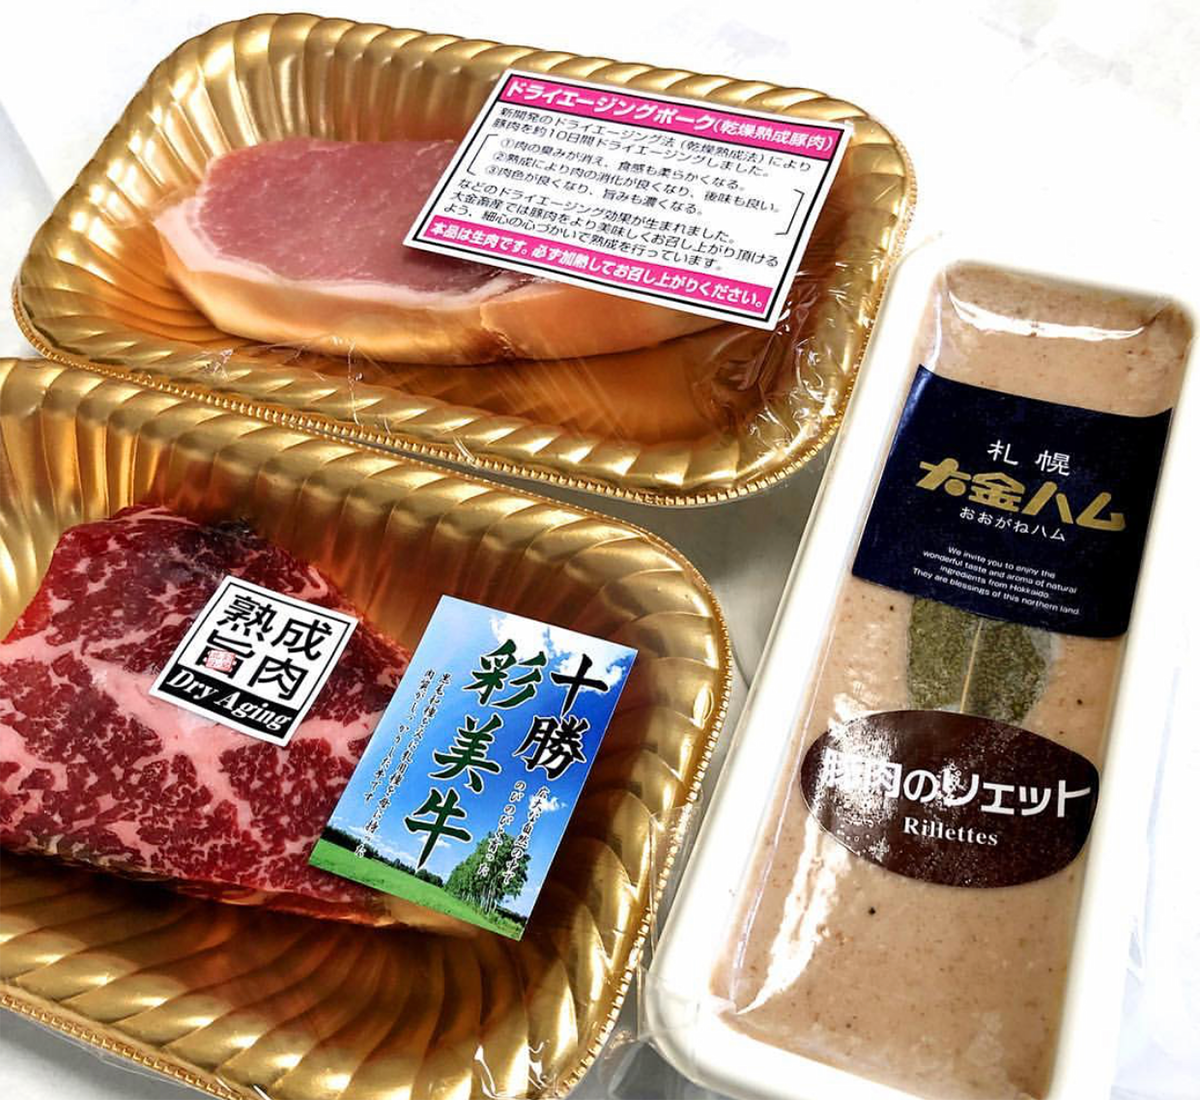 大金牛肉店 希少部位 熟成肉 ジビエなど様々な肉を取り扱う札幌の肉屋 Hokkaido Bound